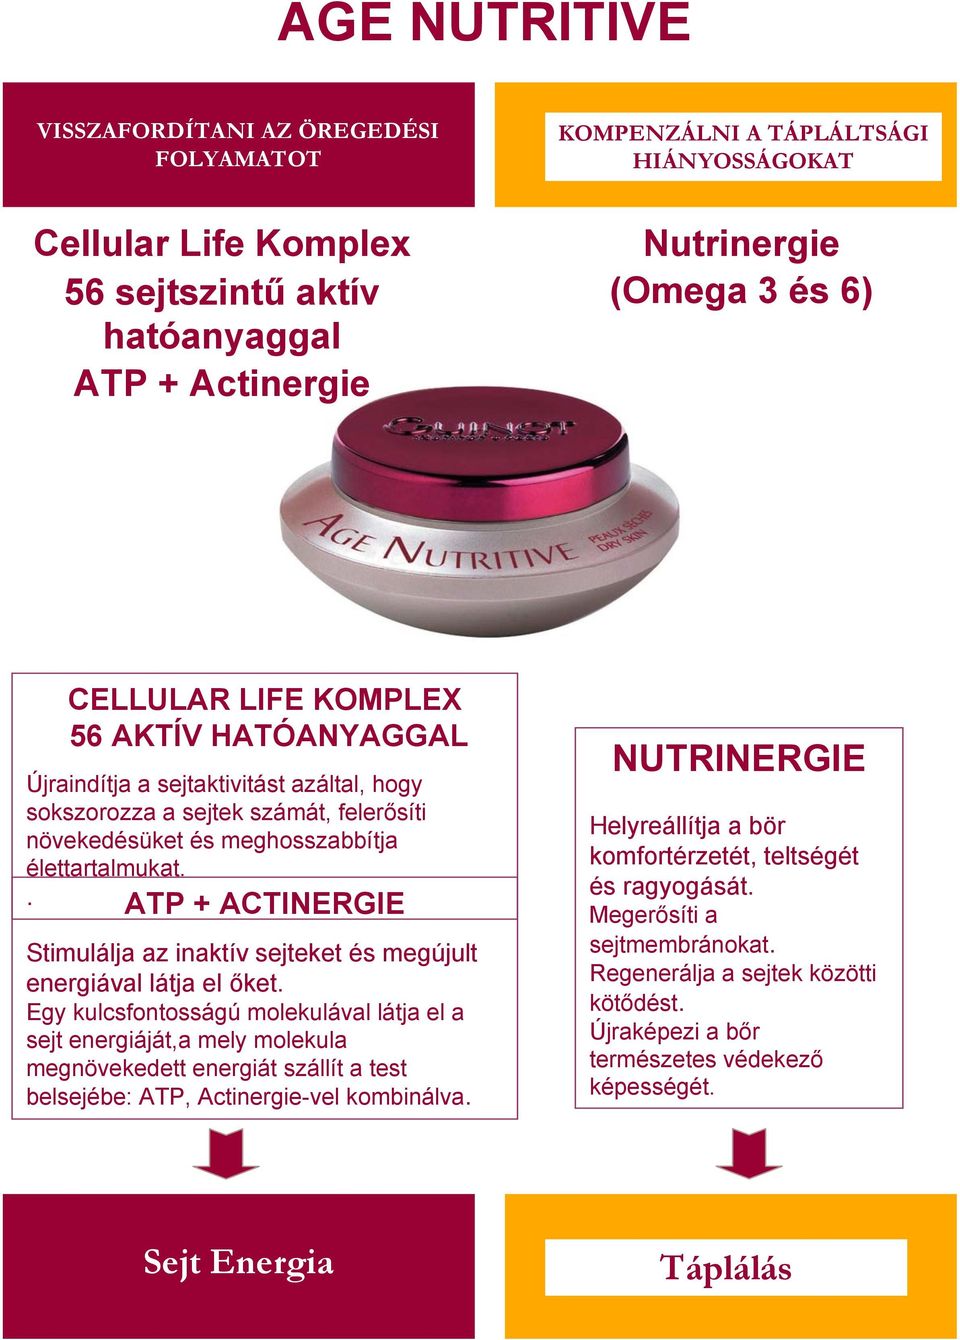 . ATP + ACTINERGIE Stimulálja az inaktív sejteket és megújult energiával látja el őket.